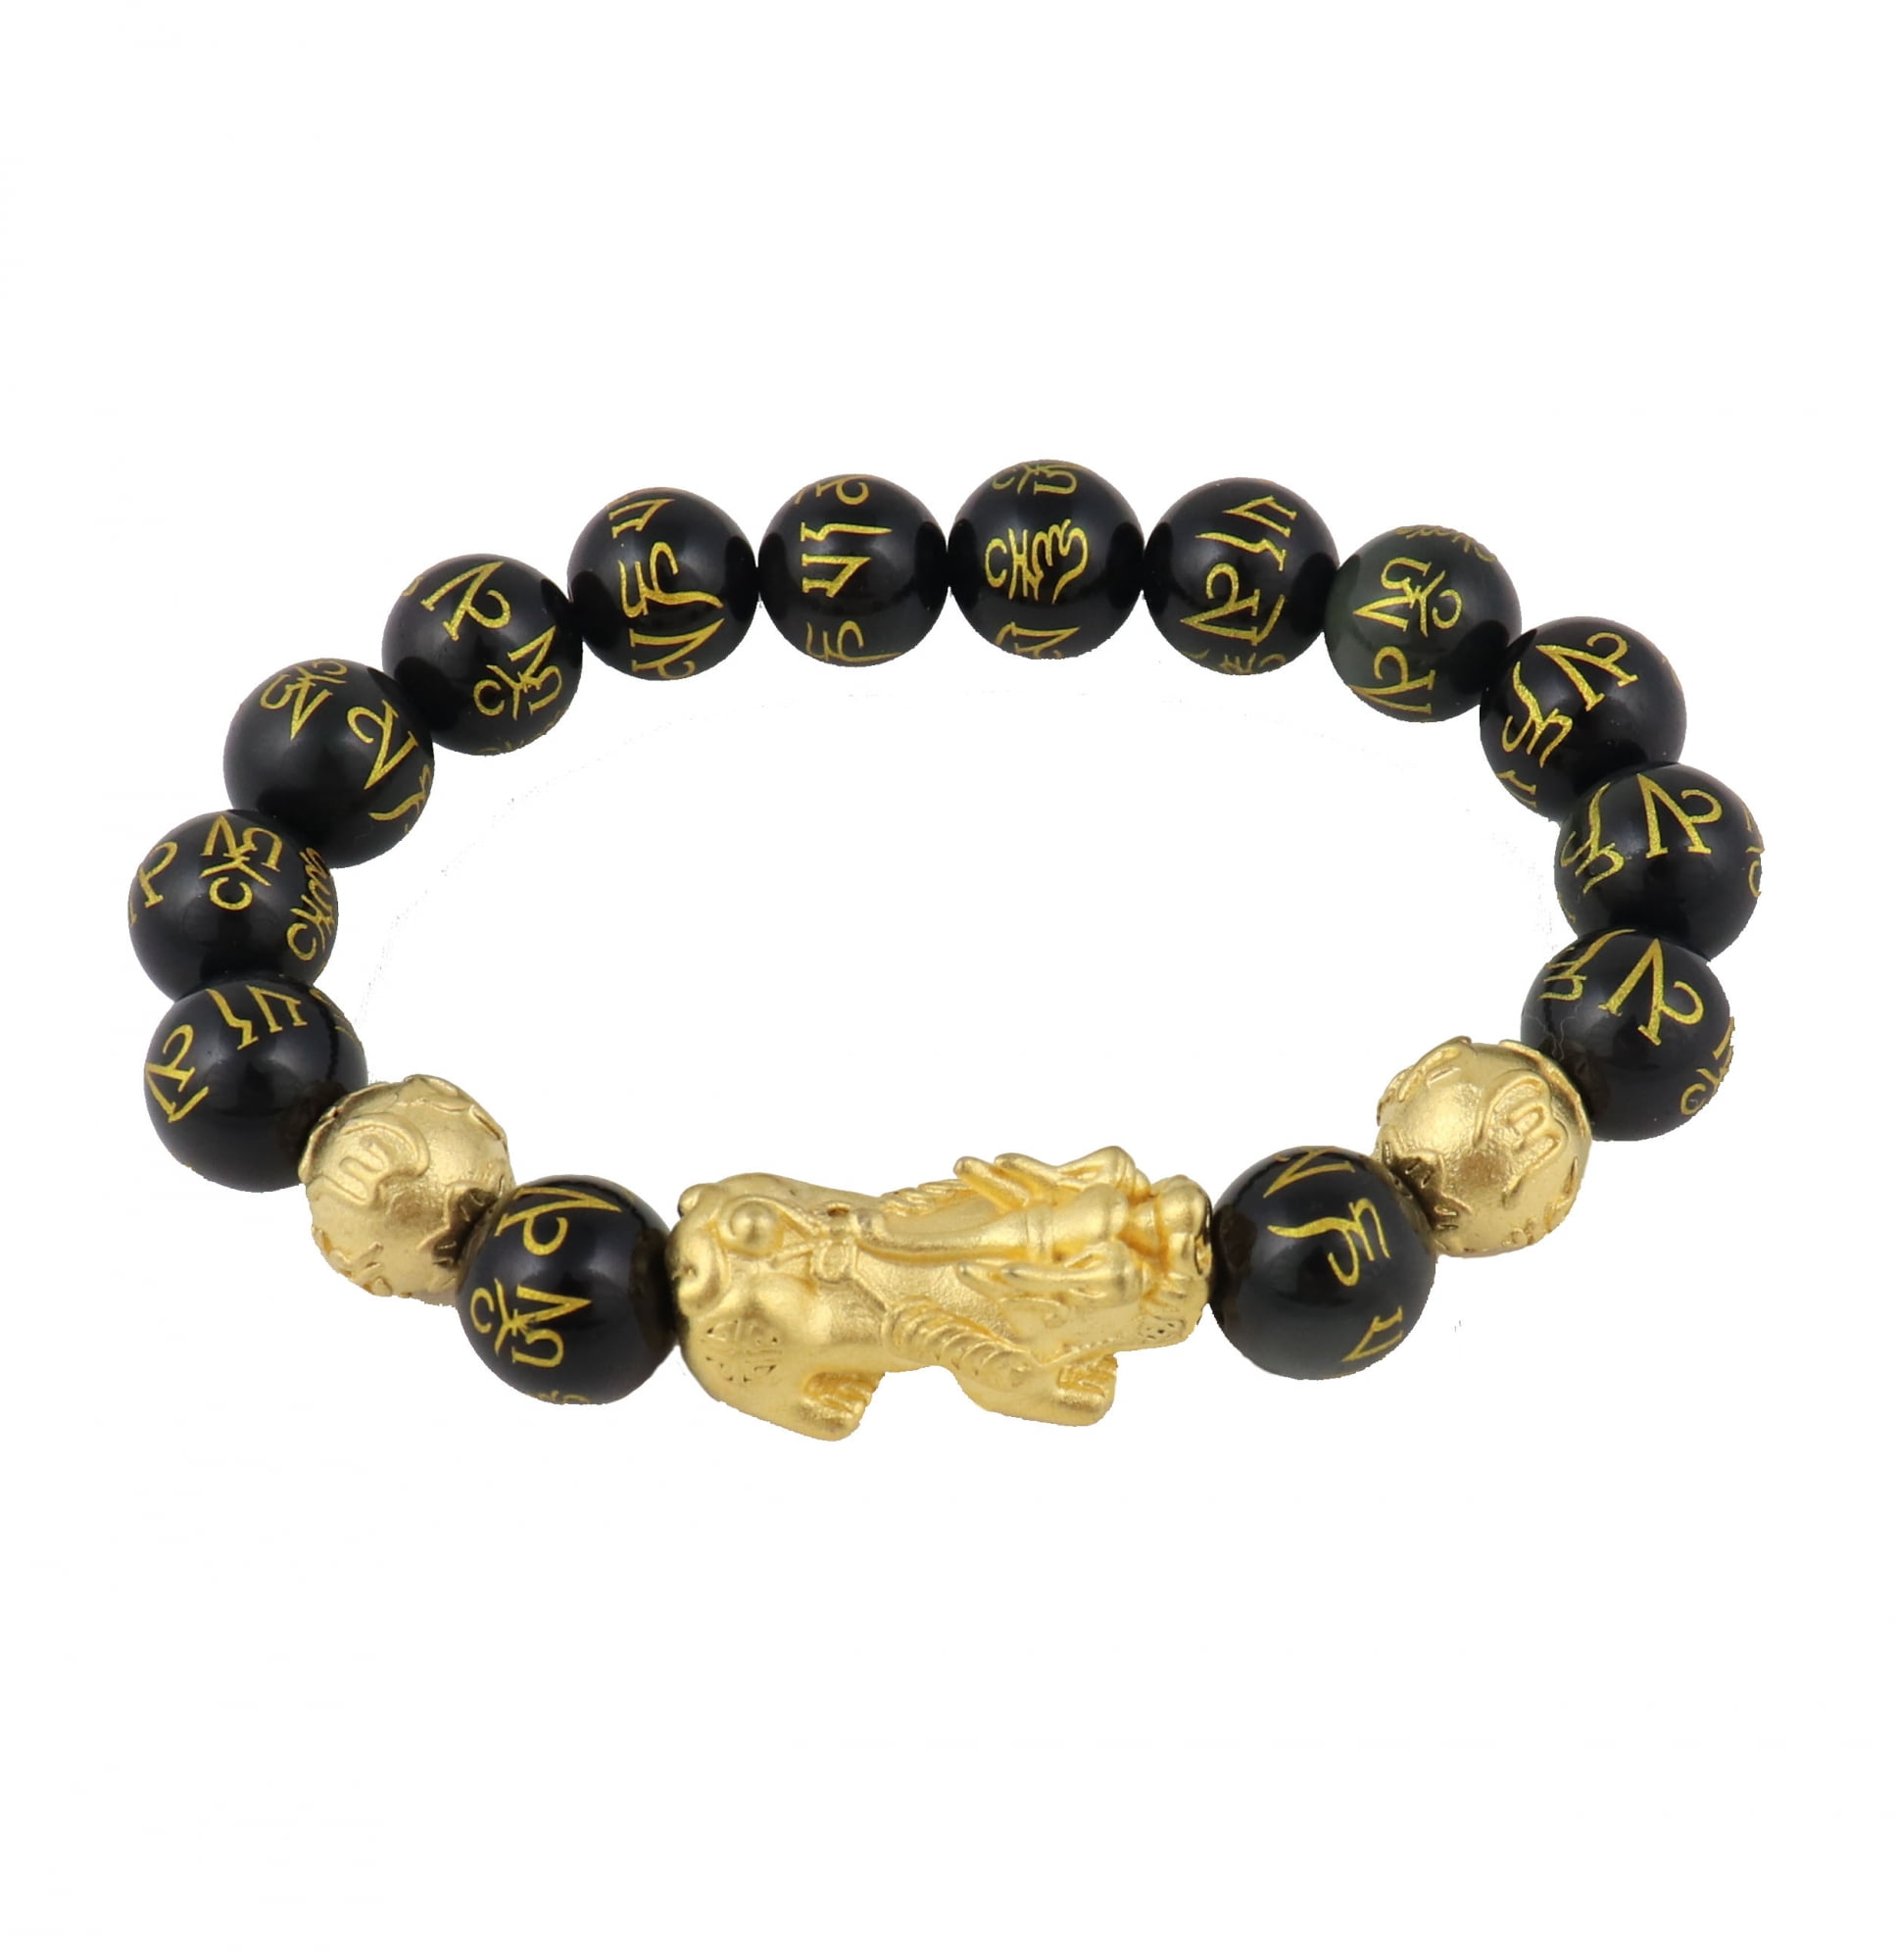 Genuine Feng Shui Black Obsidian Mantra Beaded Bracelet with Gold